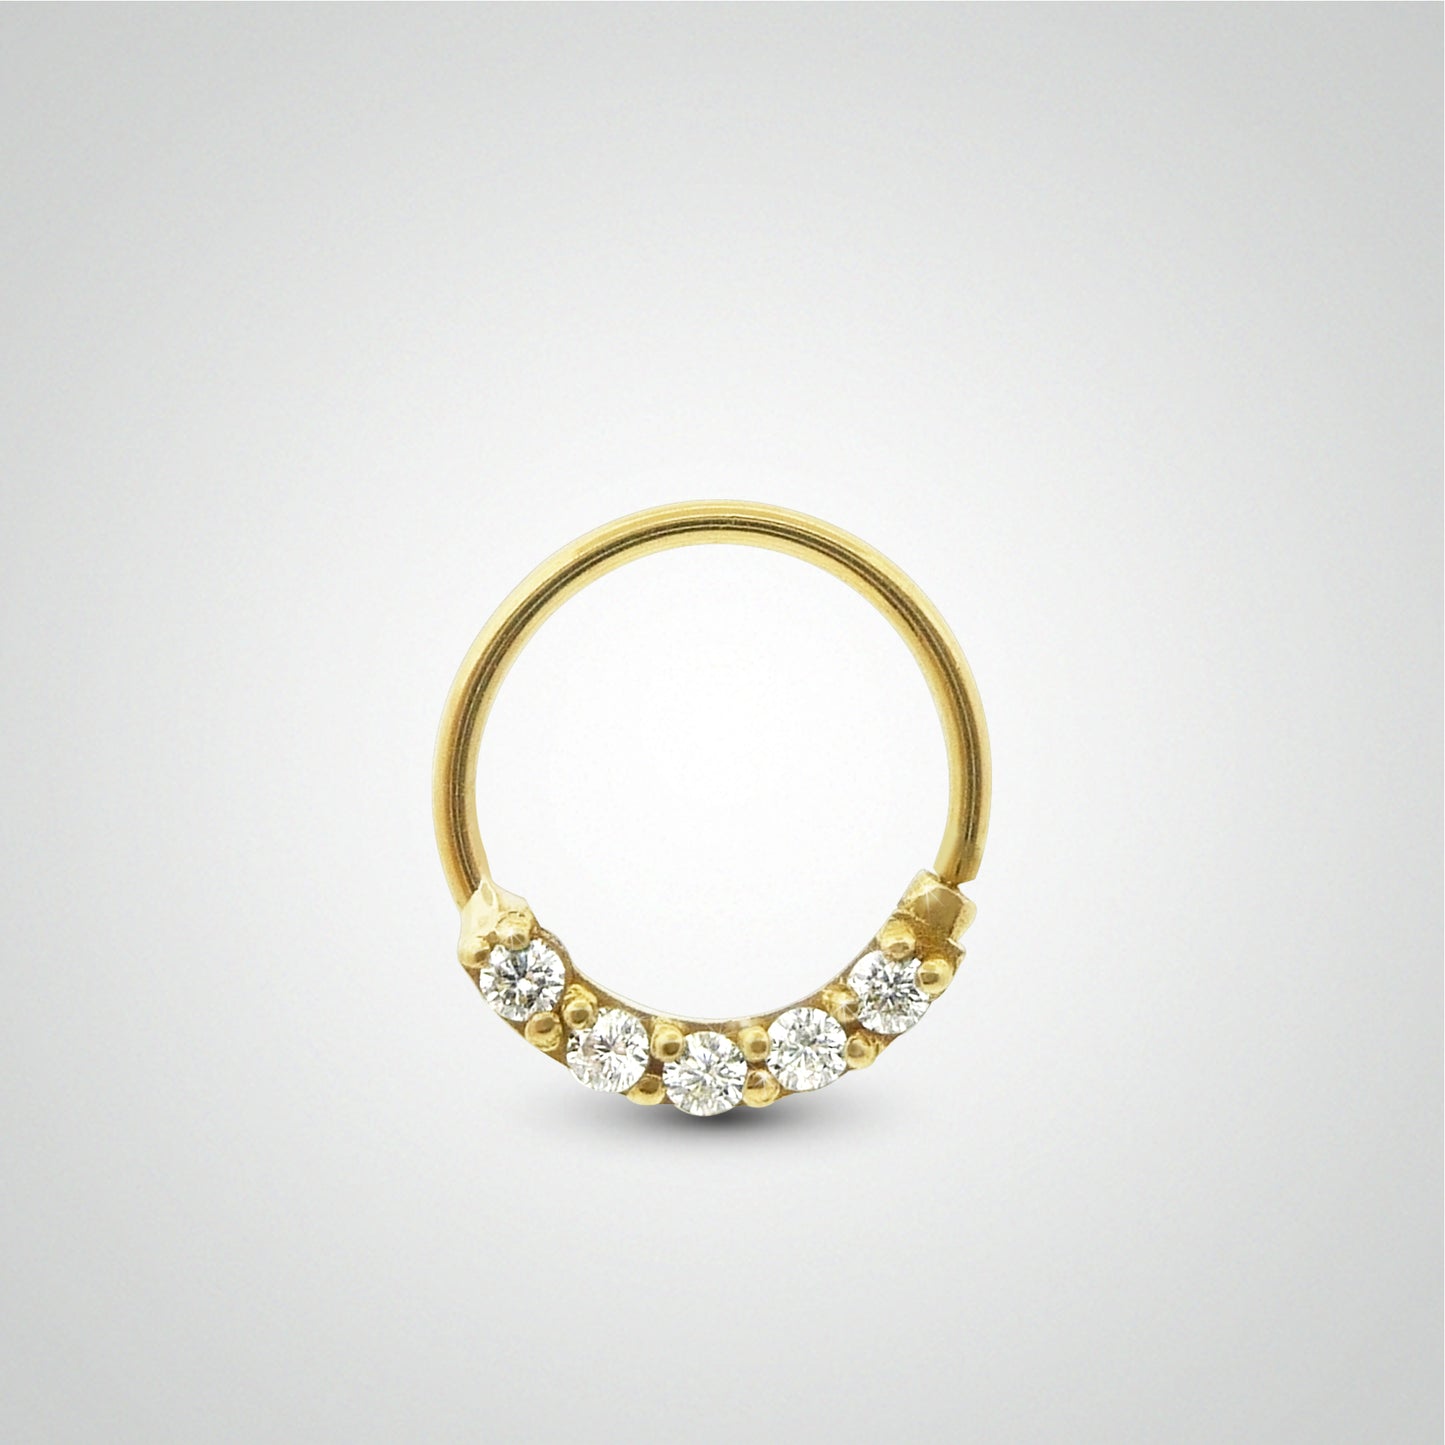 Piercing hélix anneau à écarter en or jaune et zircons